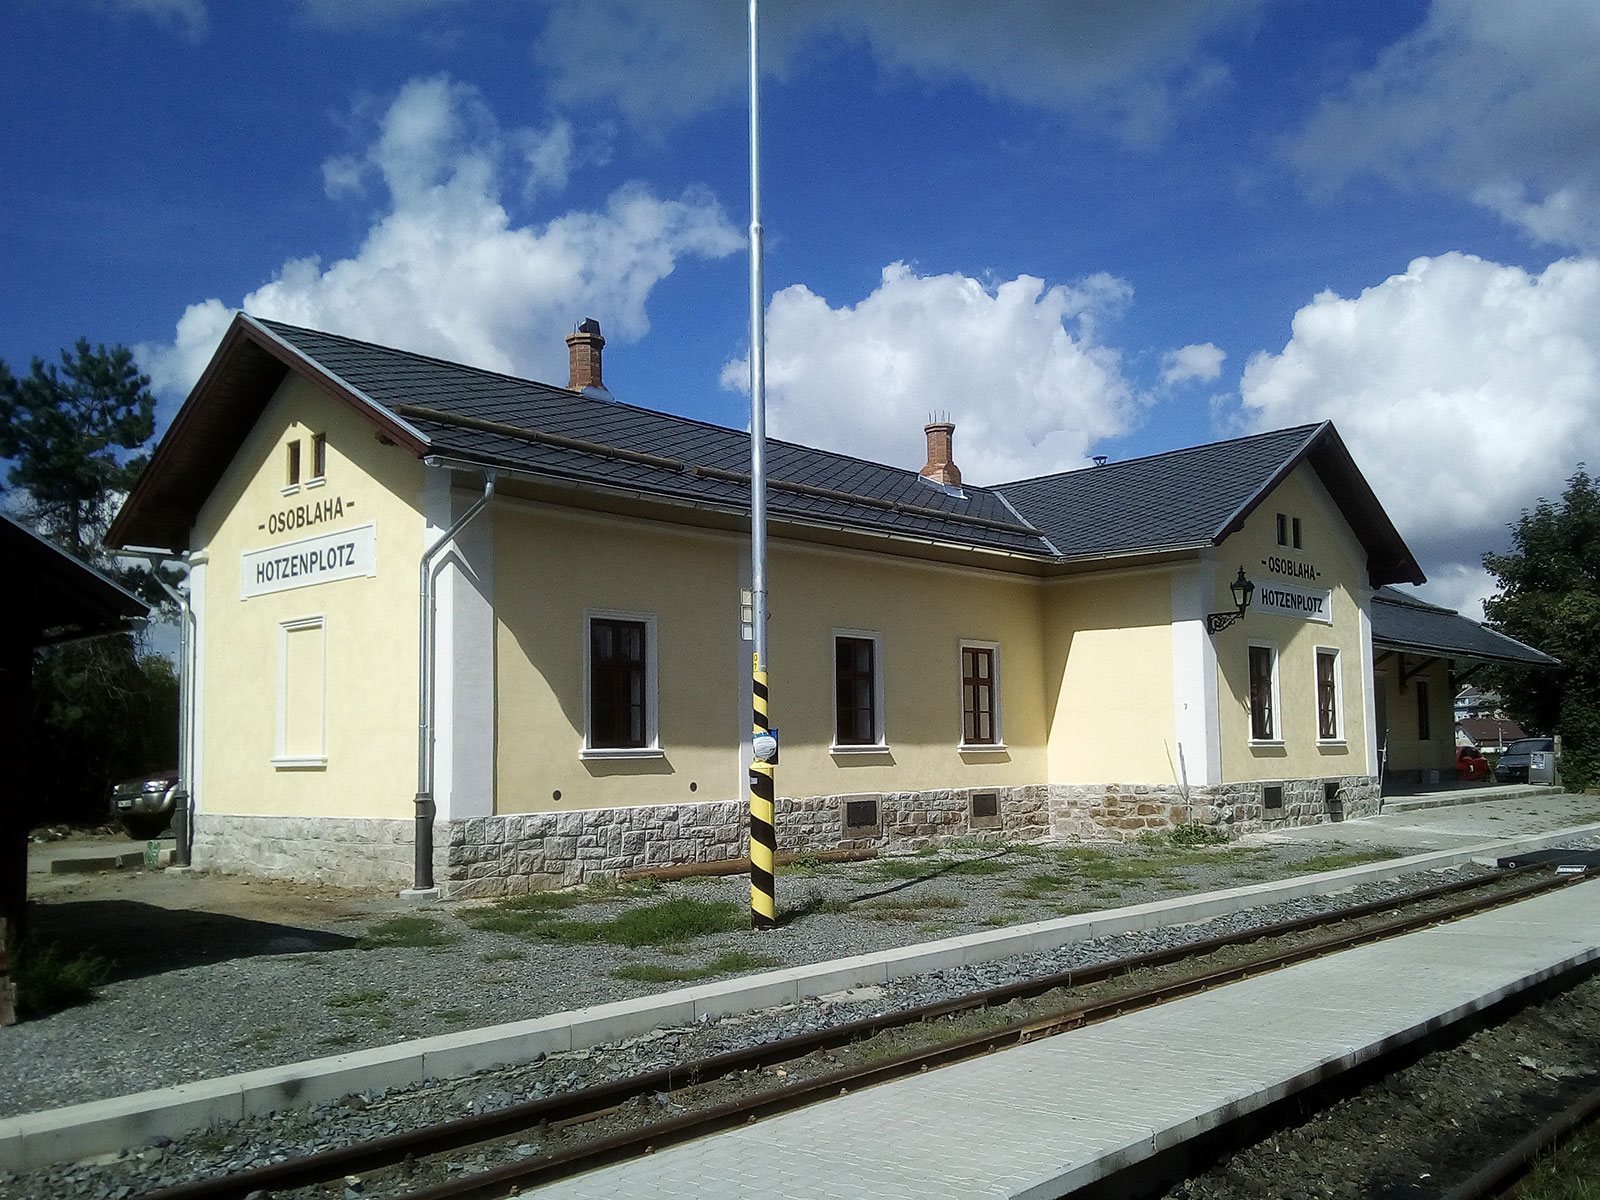 Rekonstrukce budov úzkorozchodné trati Osoblaha